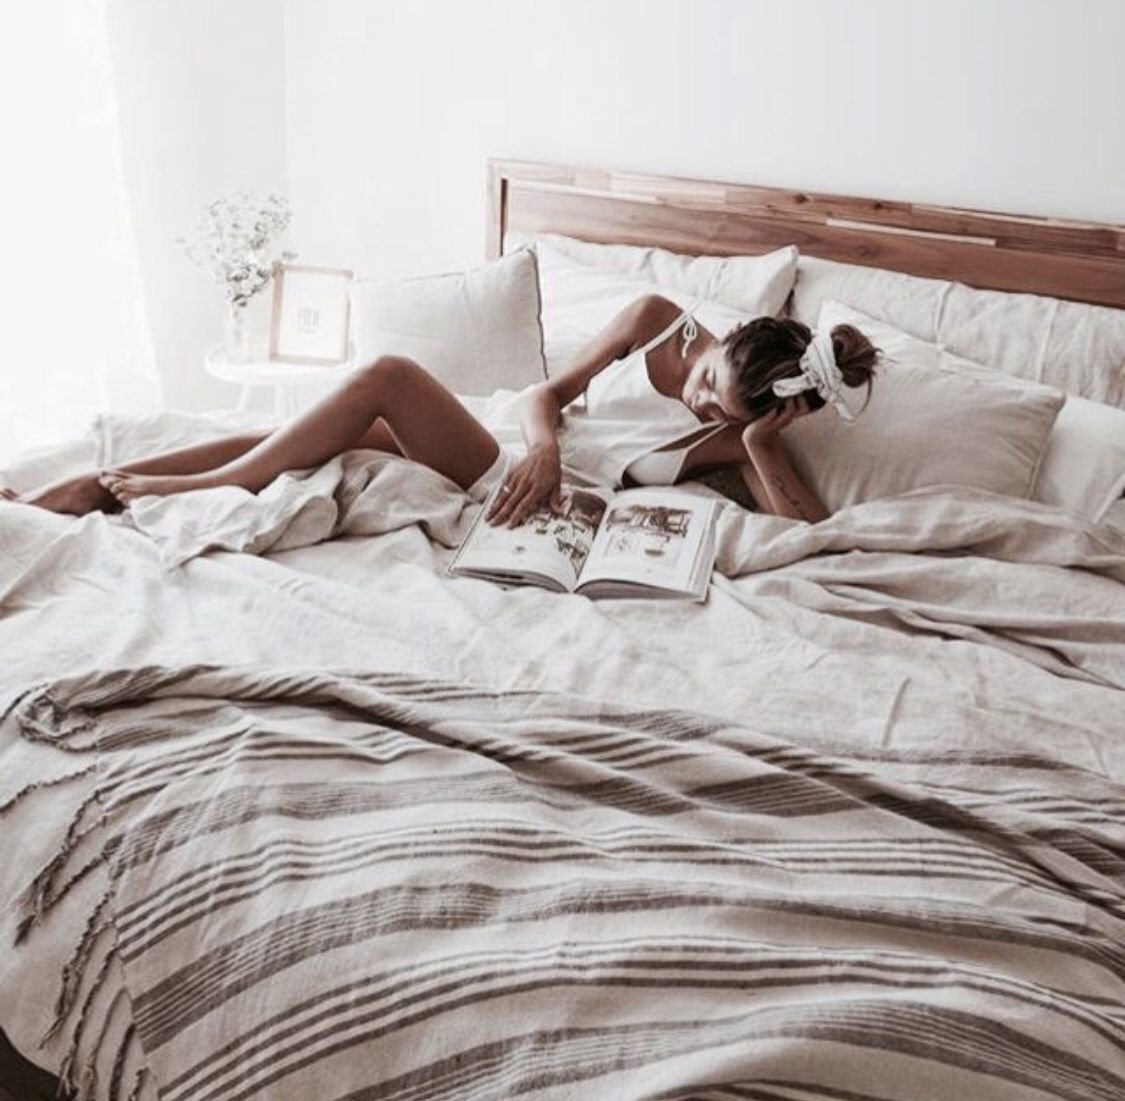 Домашняя эротическая фотосессия на кровати с балдахином